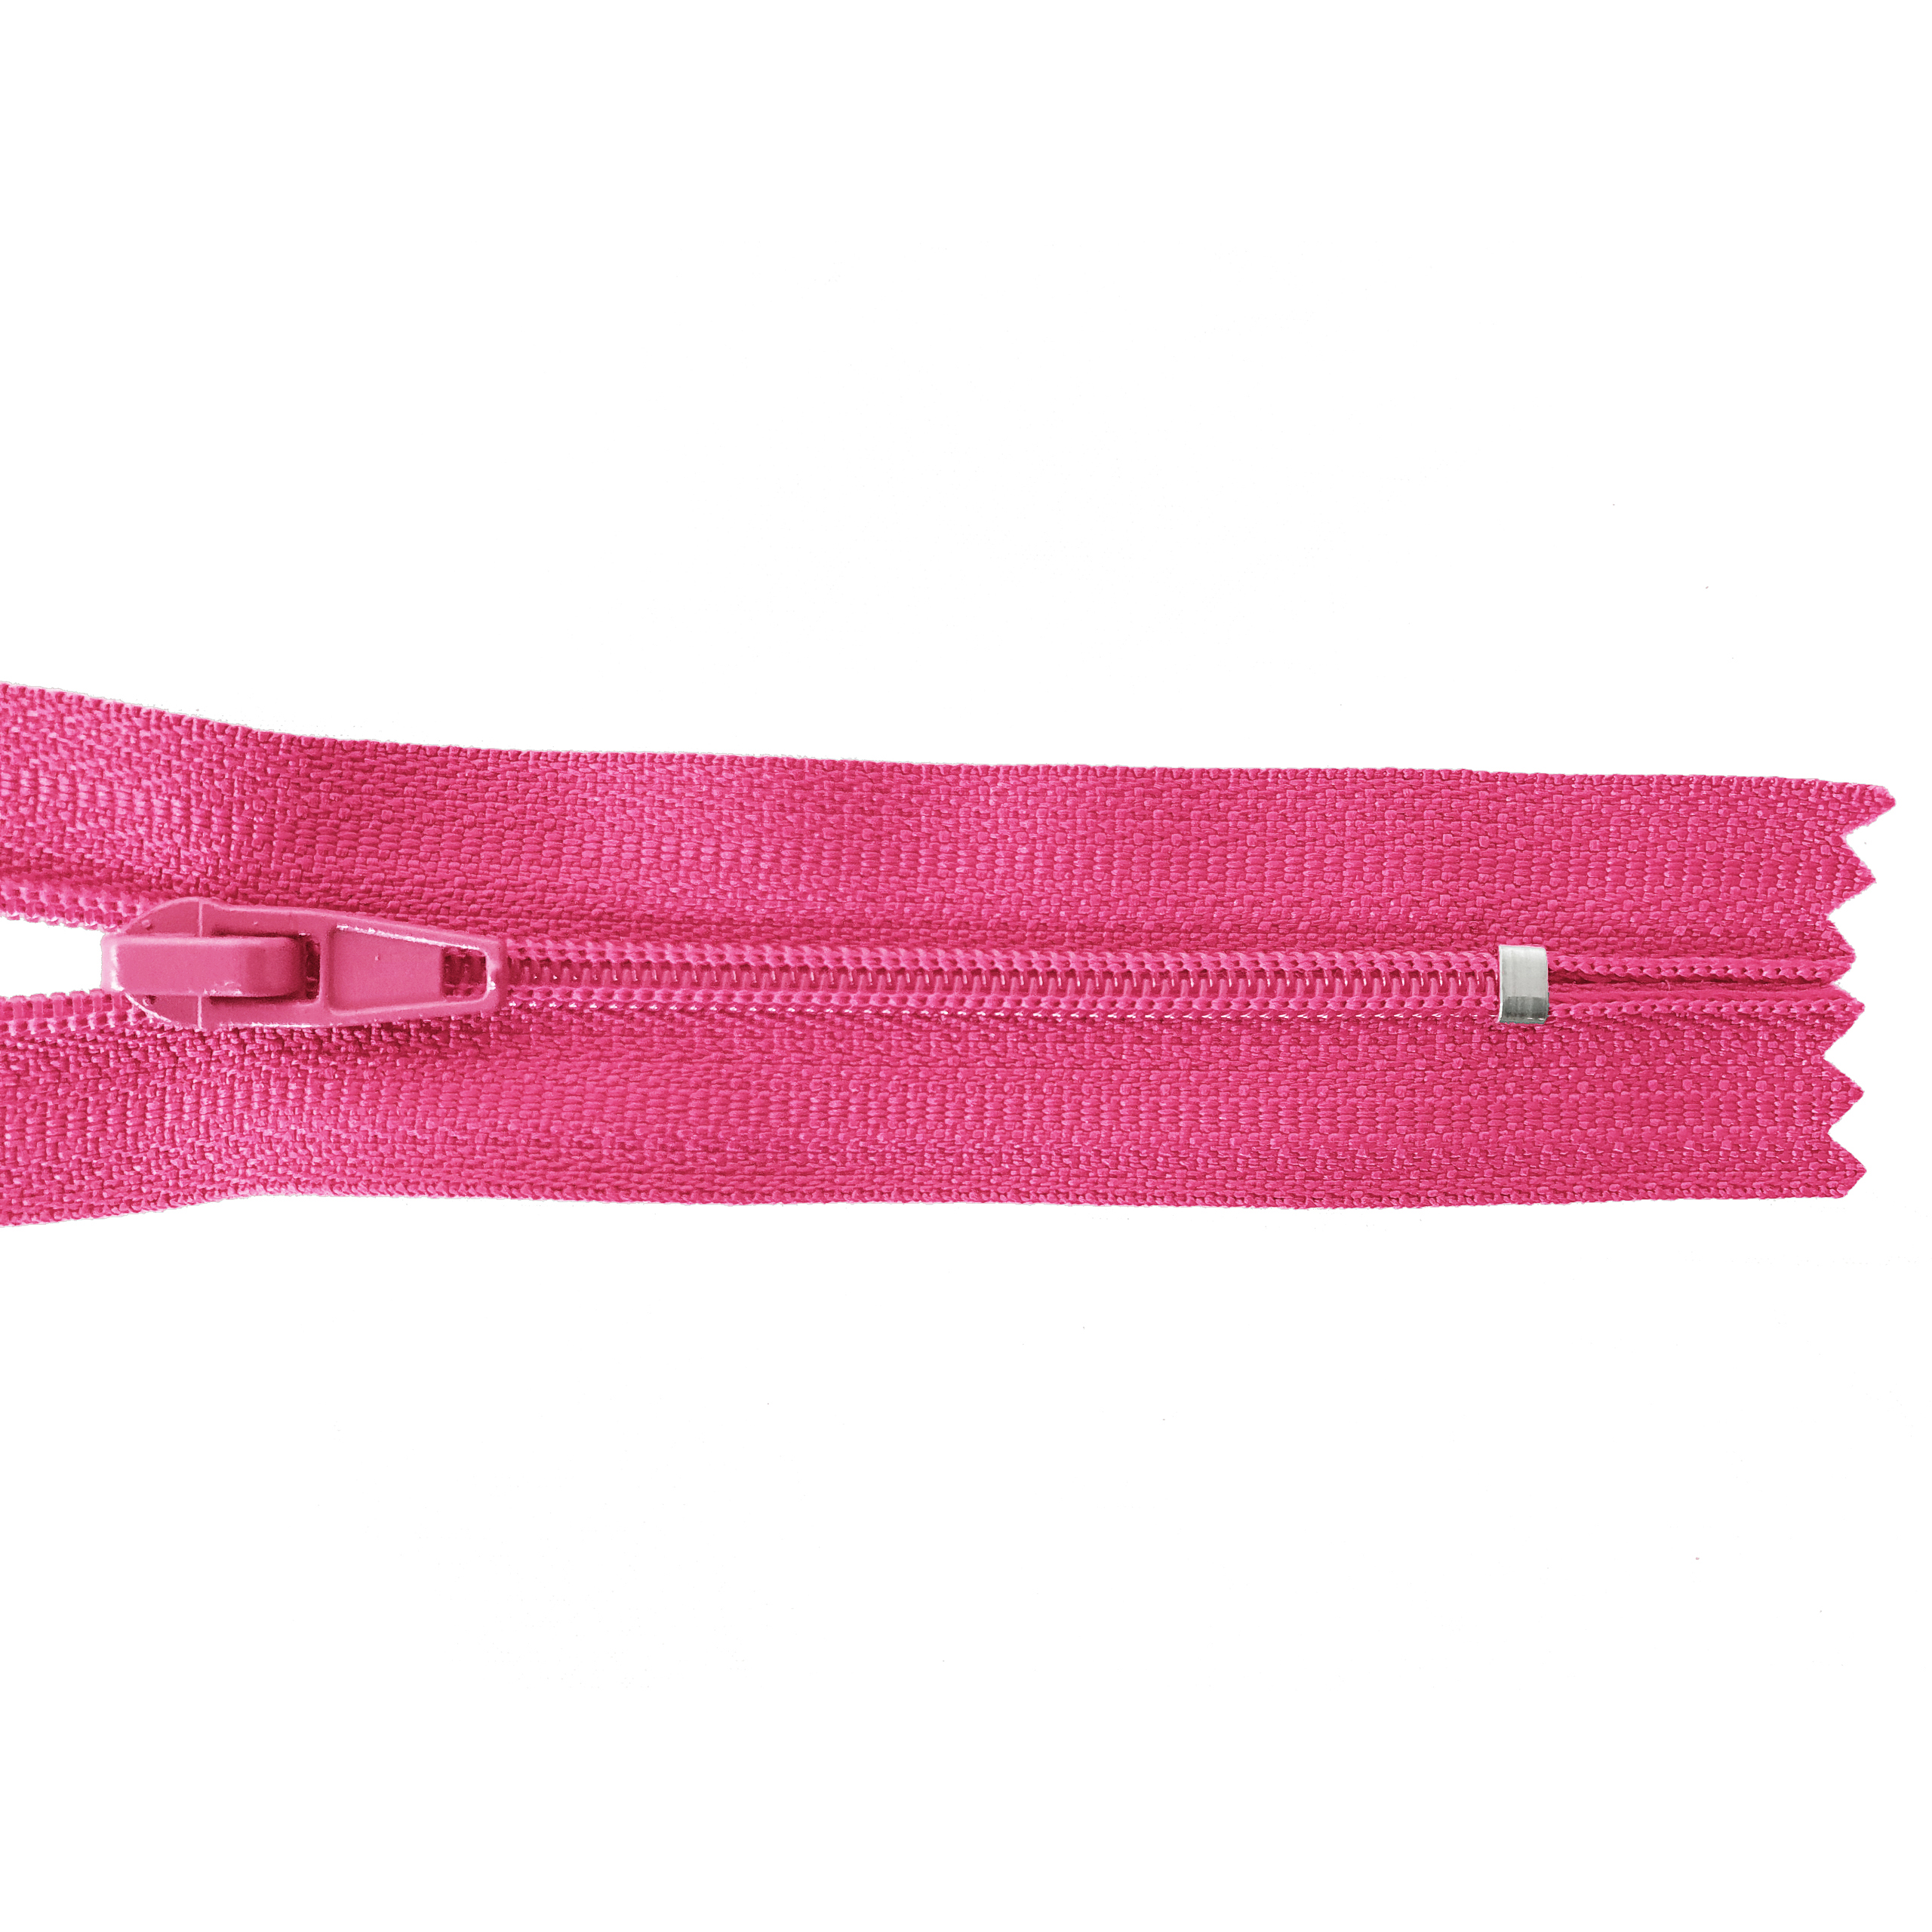 Reißverschluss nicht teilbar, PES-Spirale fein, pink, hochwertiger Marken-Reißverschluss von Rubi/Barcelona